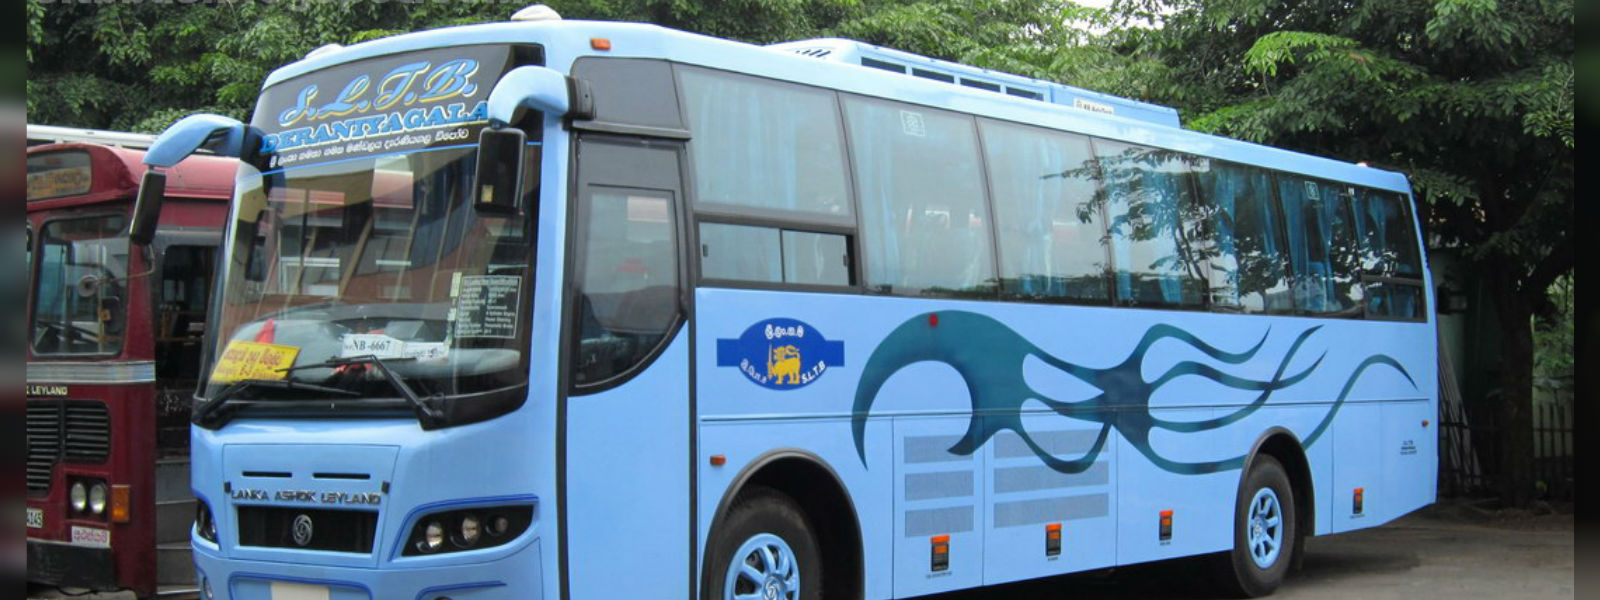 Negombo-Colombo expressway buses on strike